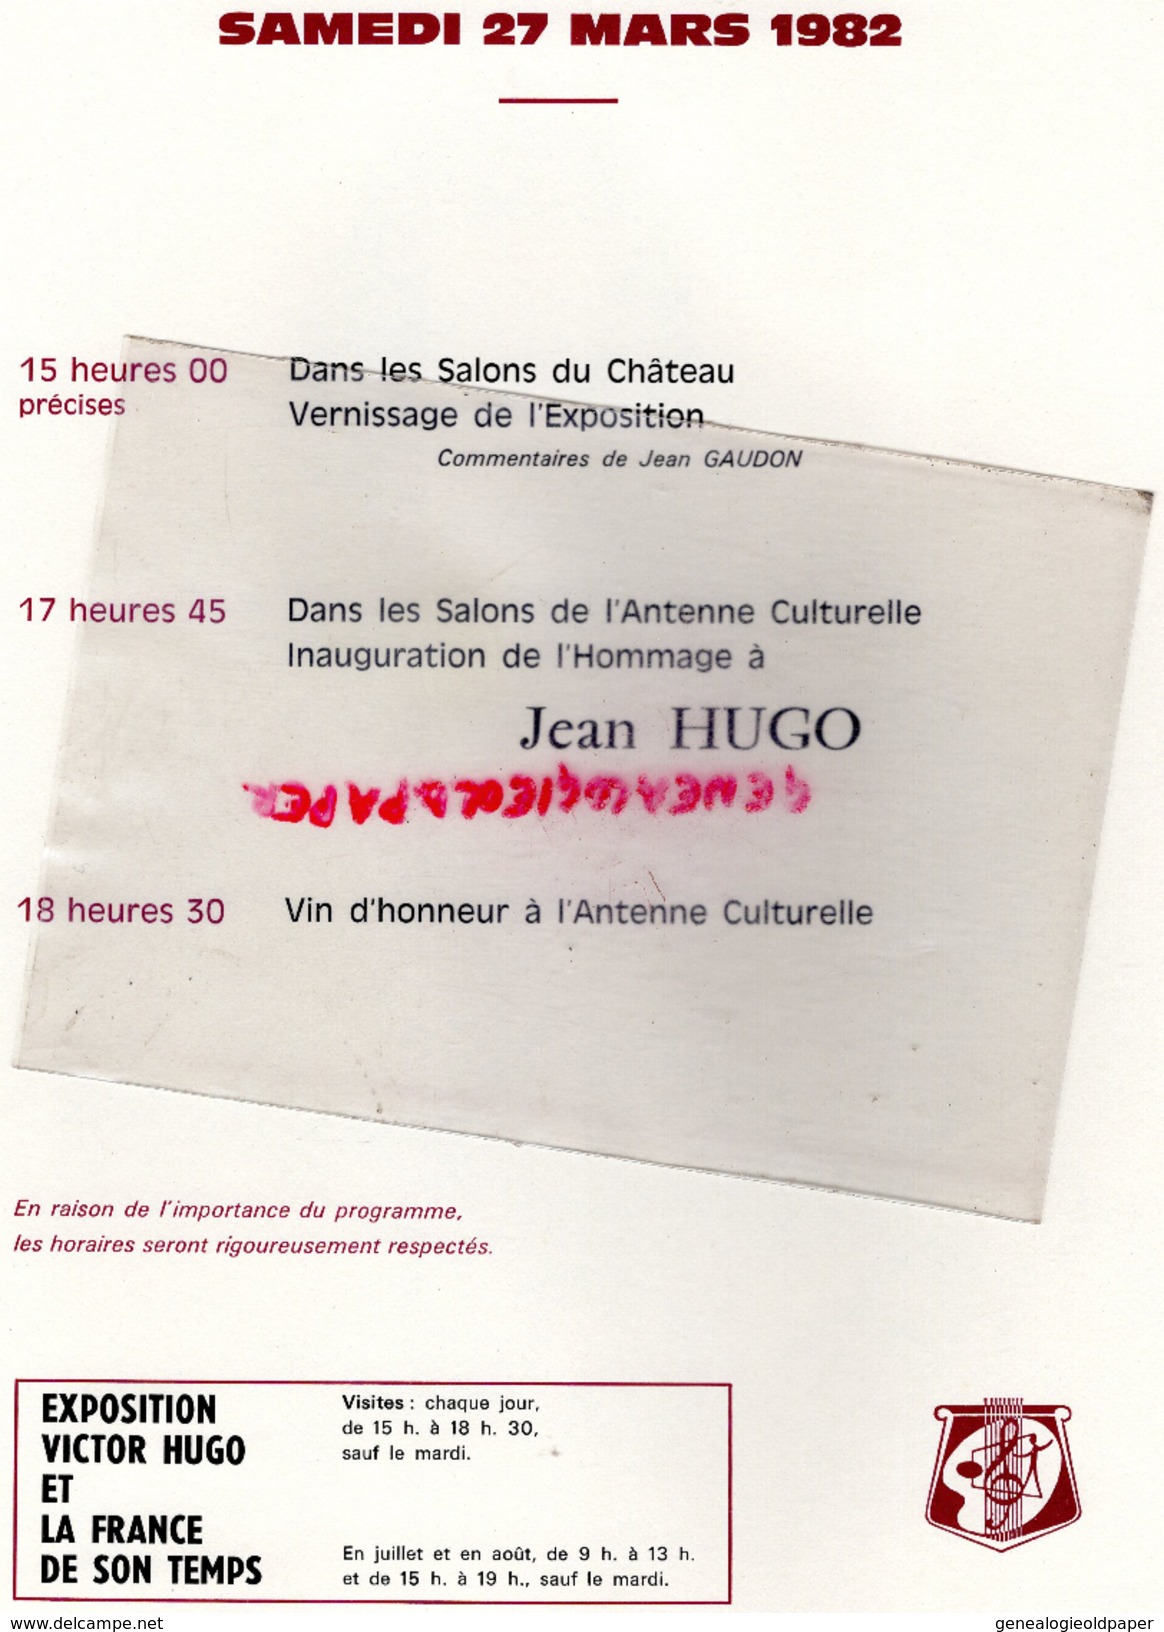 87- ROCHECHOUART - PLAQUETTE VICTOR HUGO ET LA FRANCE DE SON TEMPS- 27 MARS 1982 AU CHATEAU- JACK LANG-JACQUES GERARD - Programma's